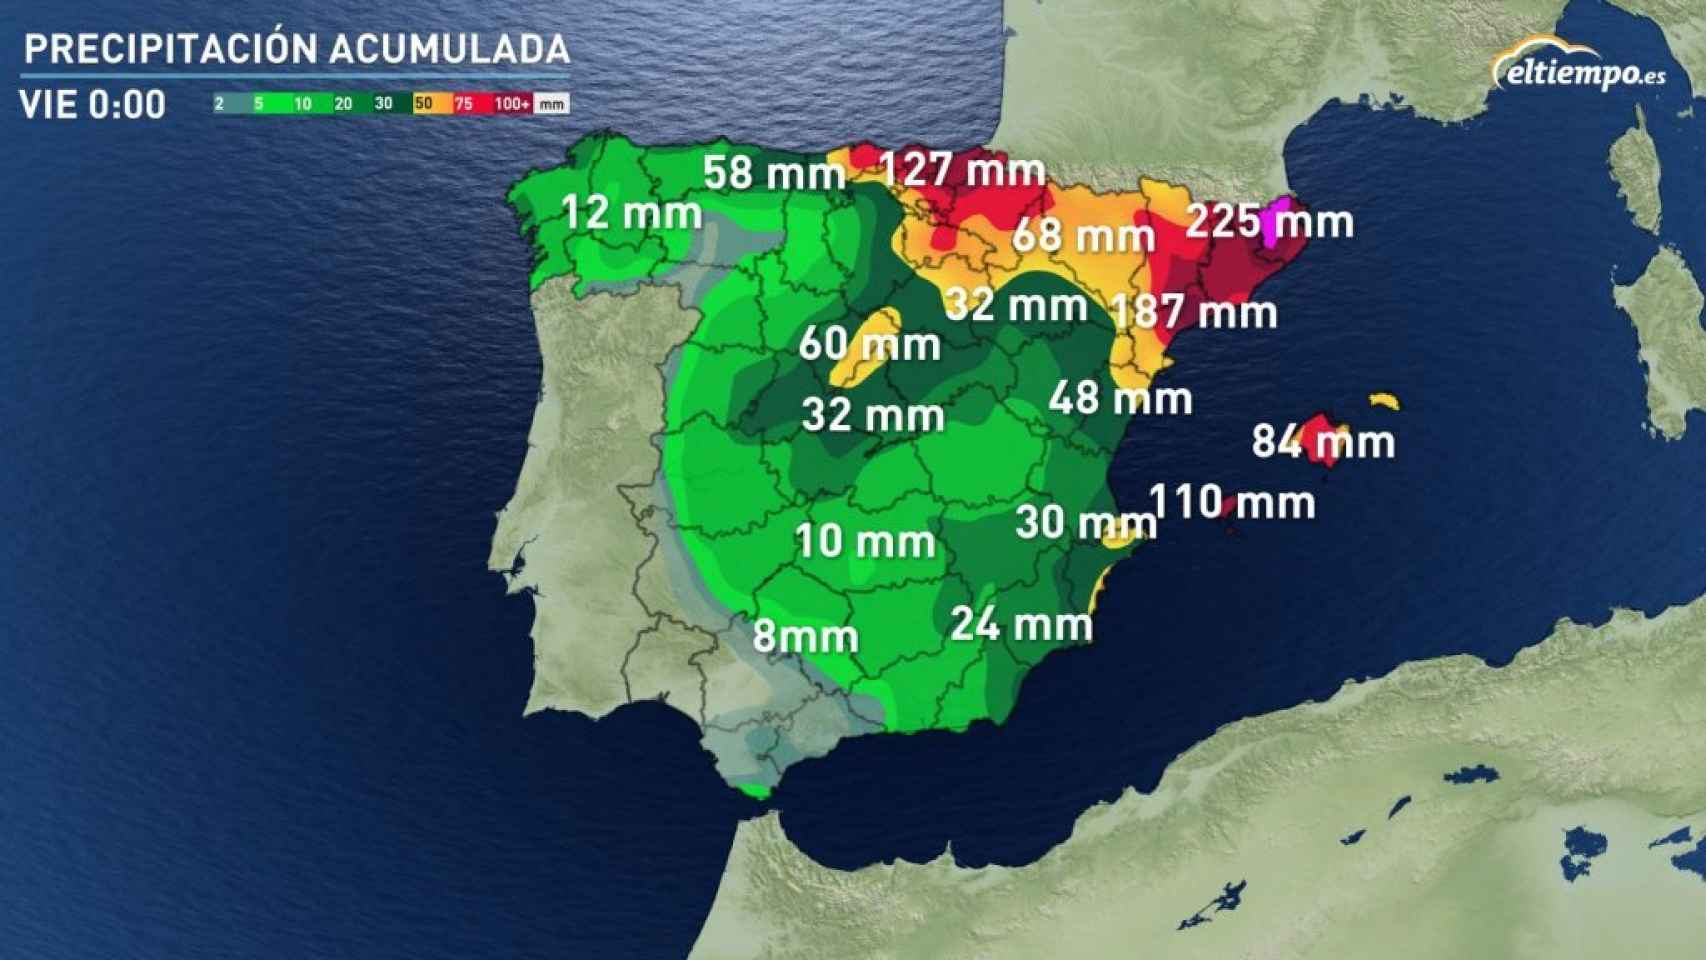 Previsión de precipitaciones acumuladas a lo largo de la semana según eltiempo.es.